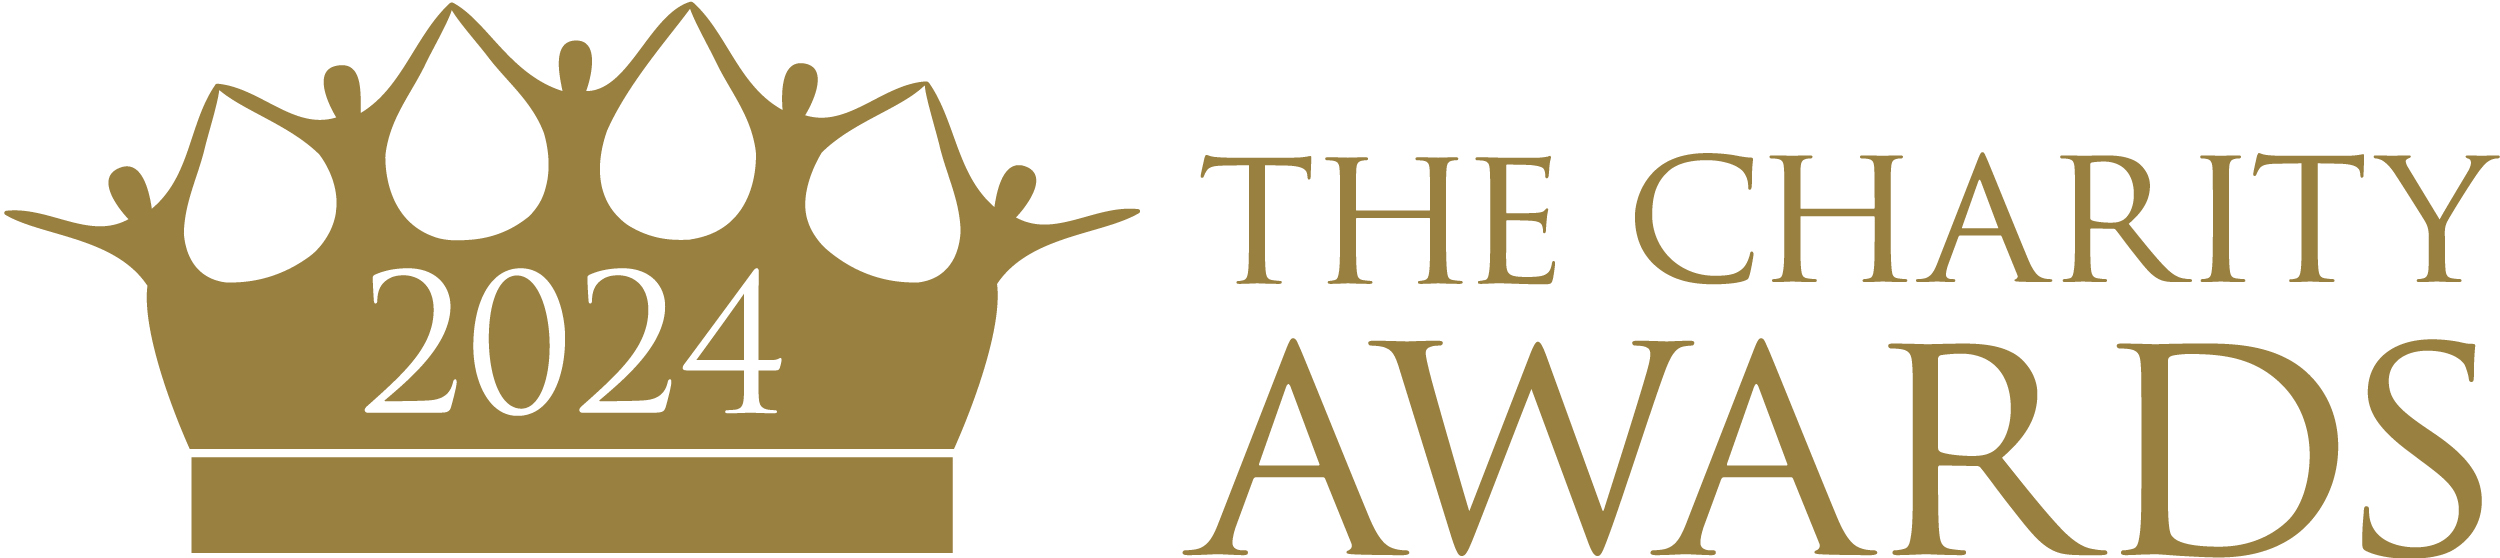 The Charity Awards 2024 logo